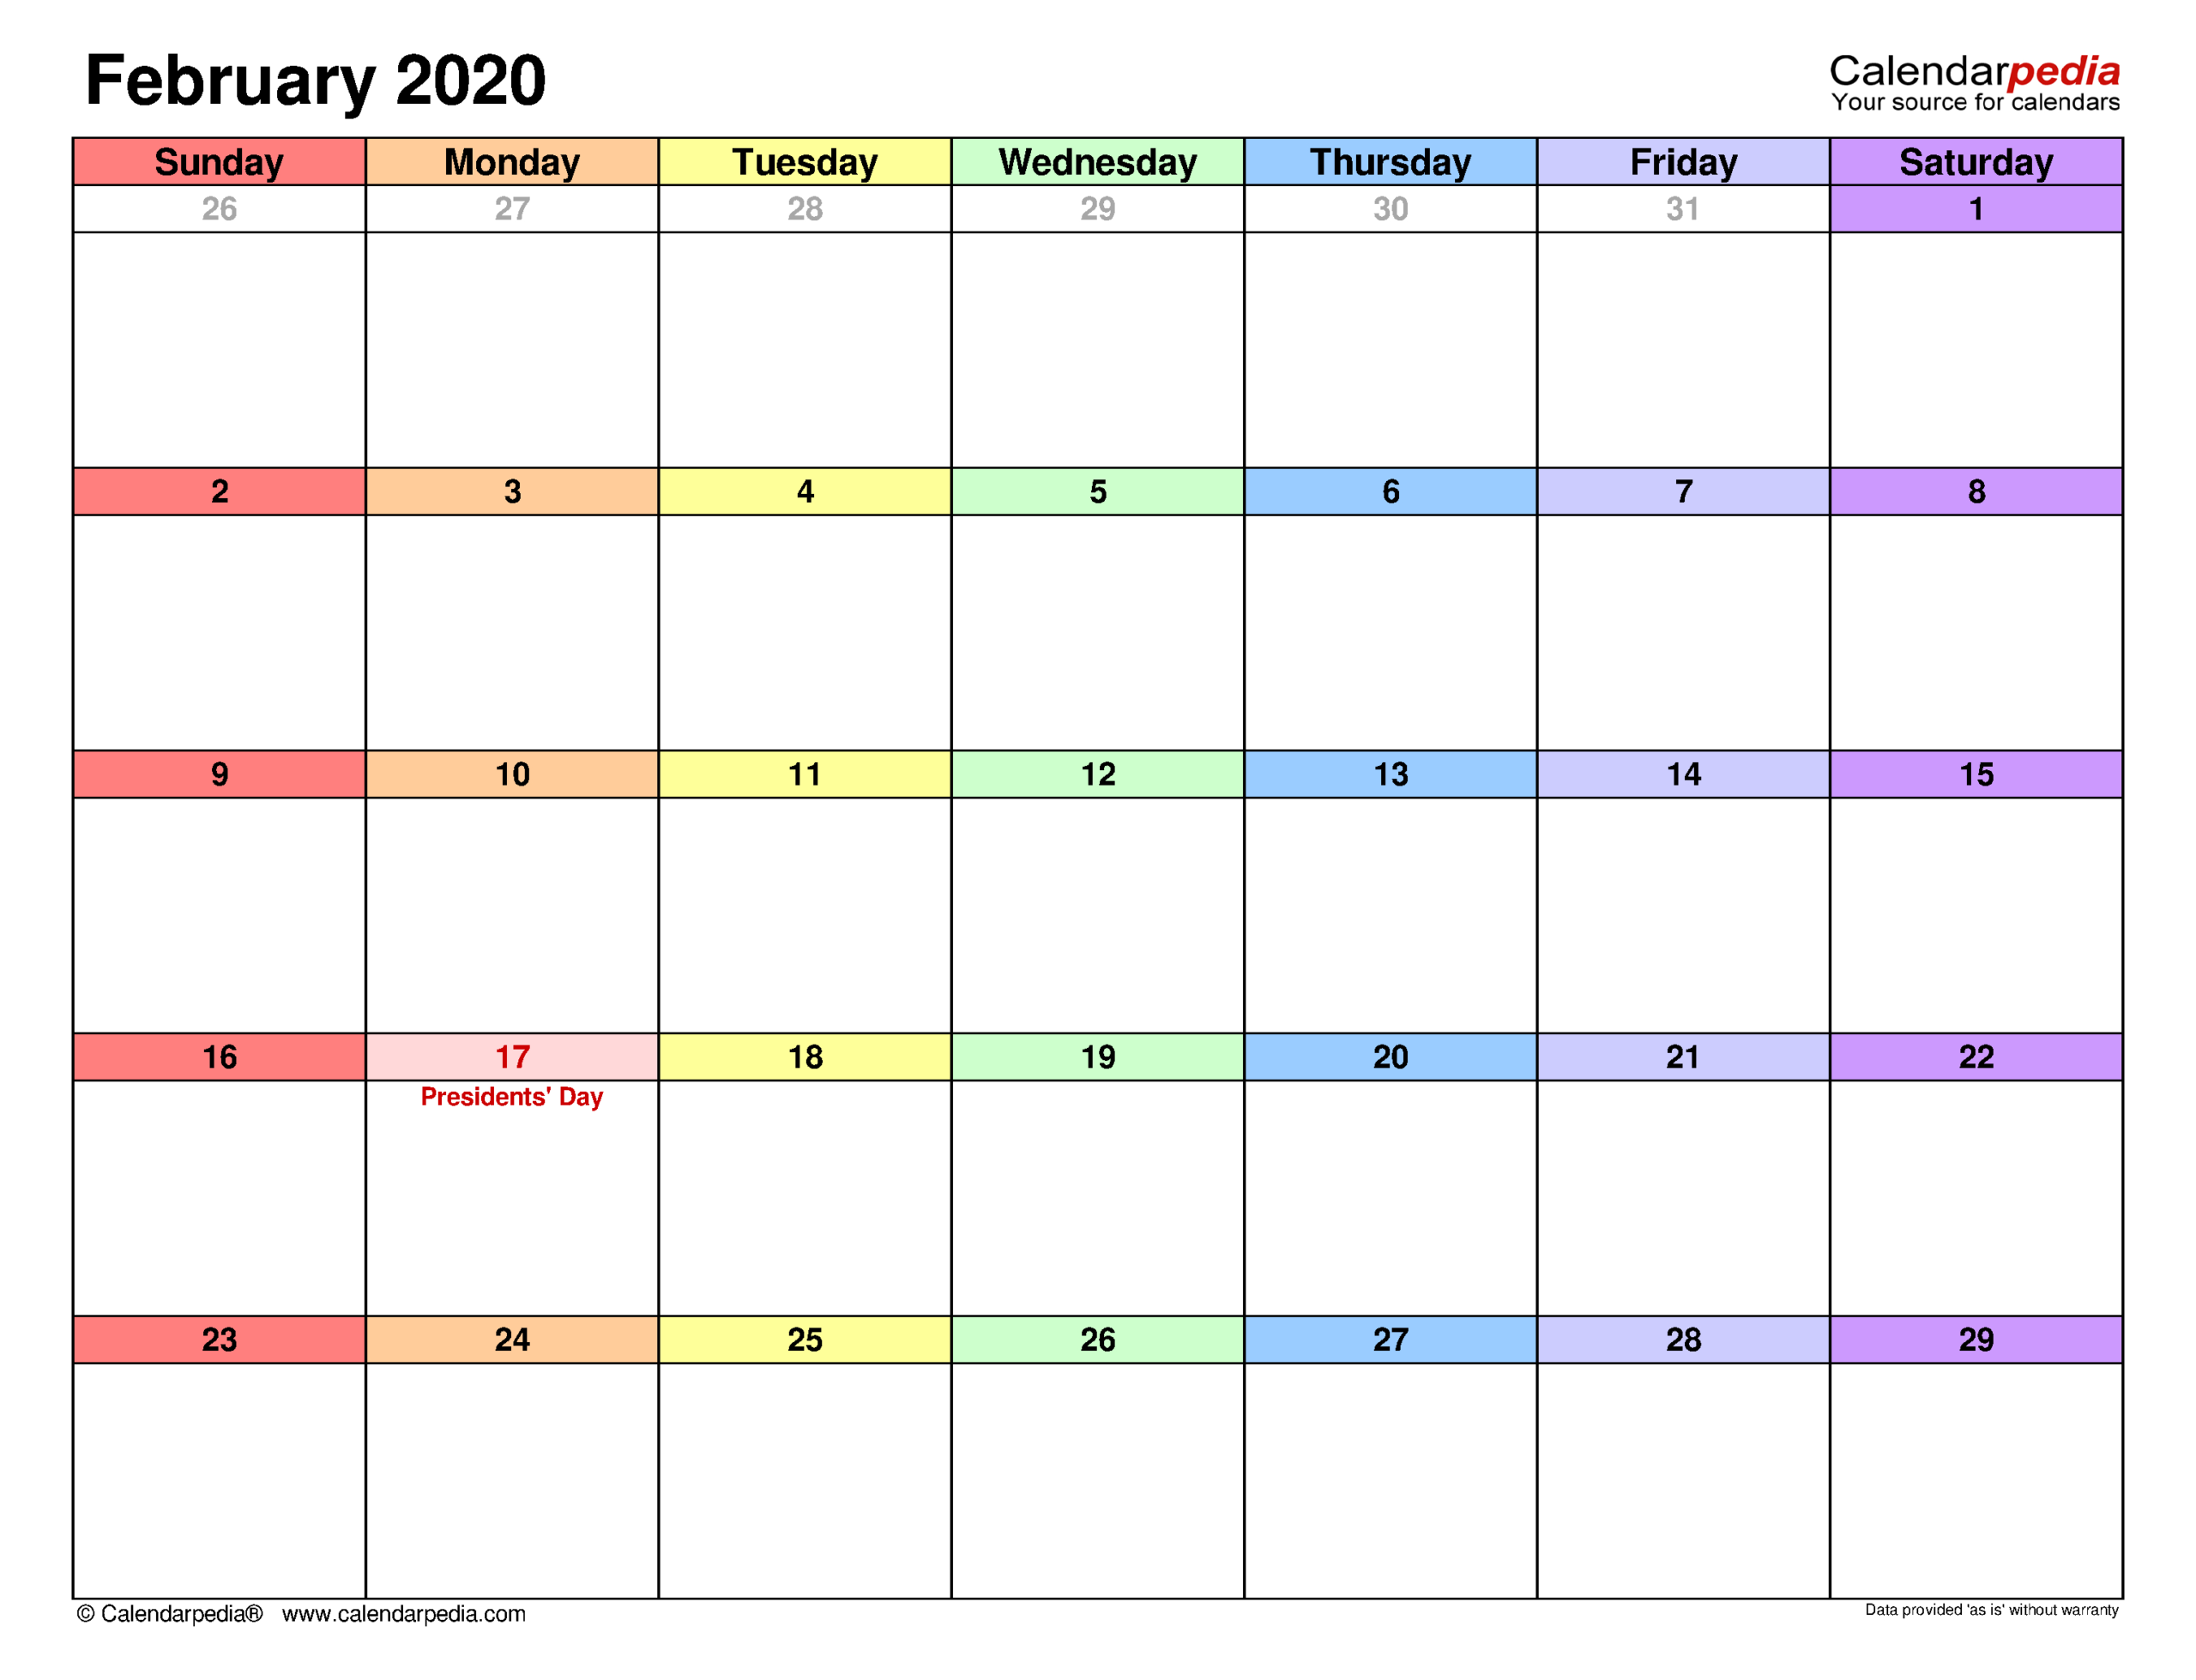 February 2020 Calendar | Templates For Word, Excel And Pdf  February 202 Calnedar